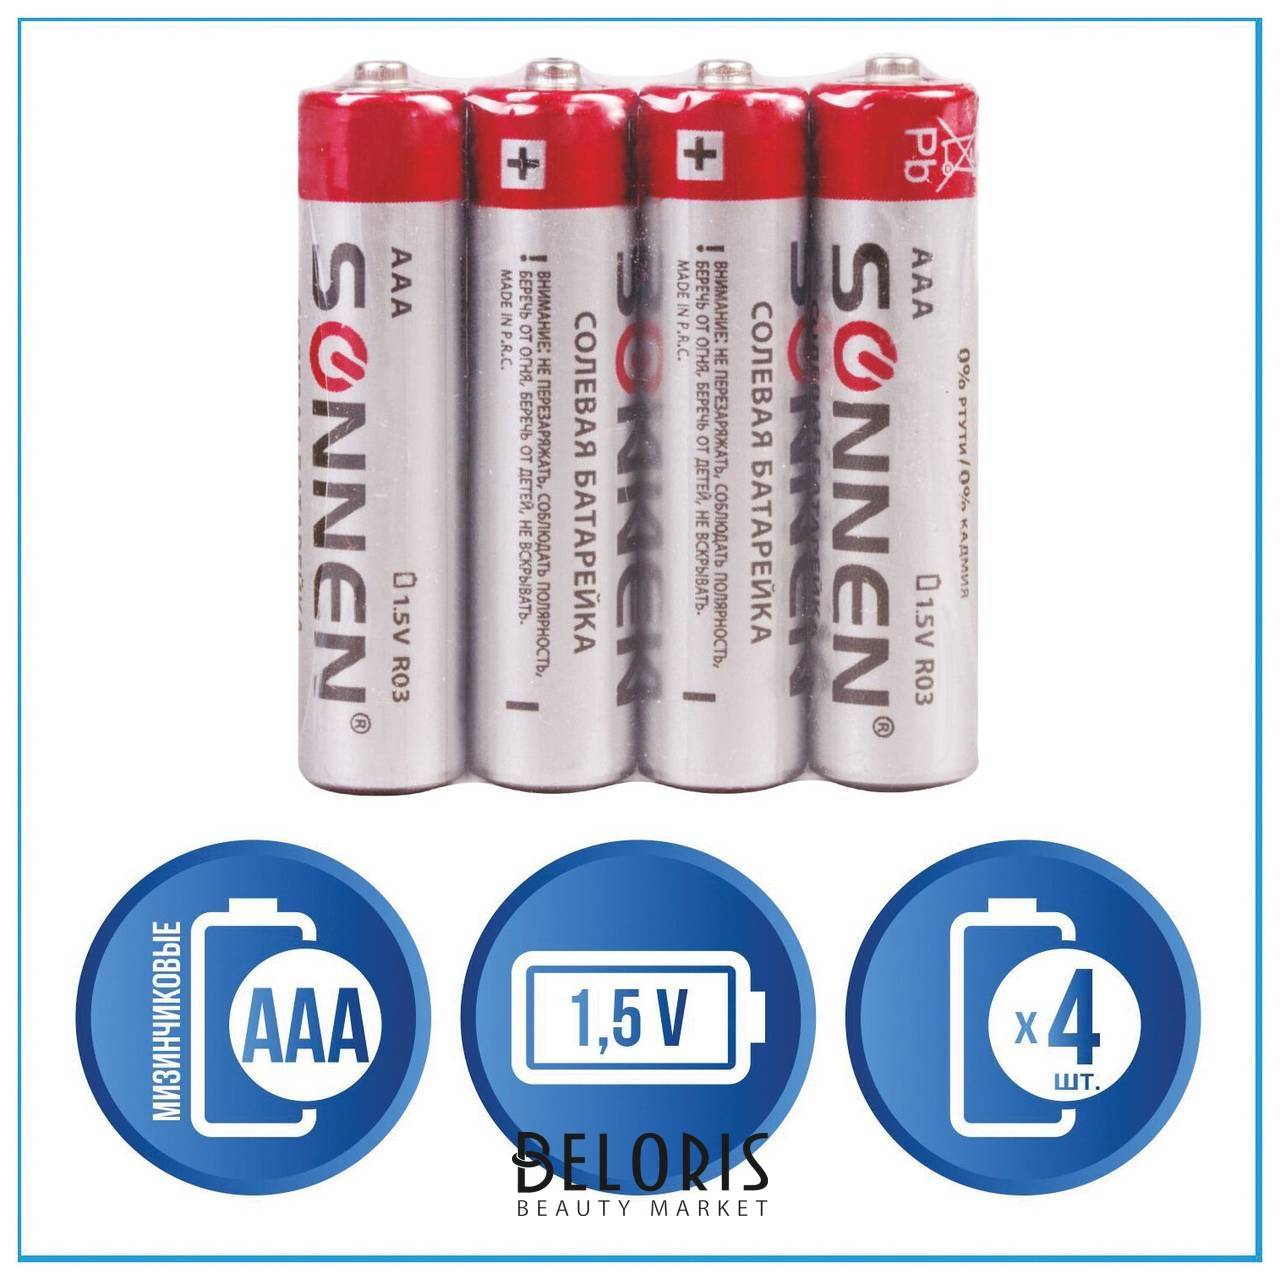 Батарейки комплект 4 шт, Sonnen, AAA (R03, 24а), солевые, мизинчиковые, в пленке, 451098 Sonnen